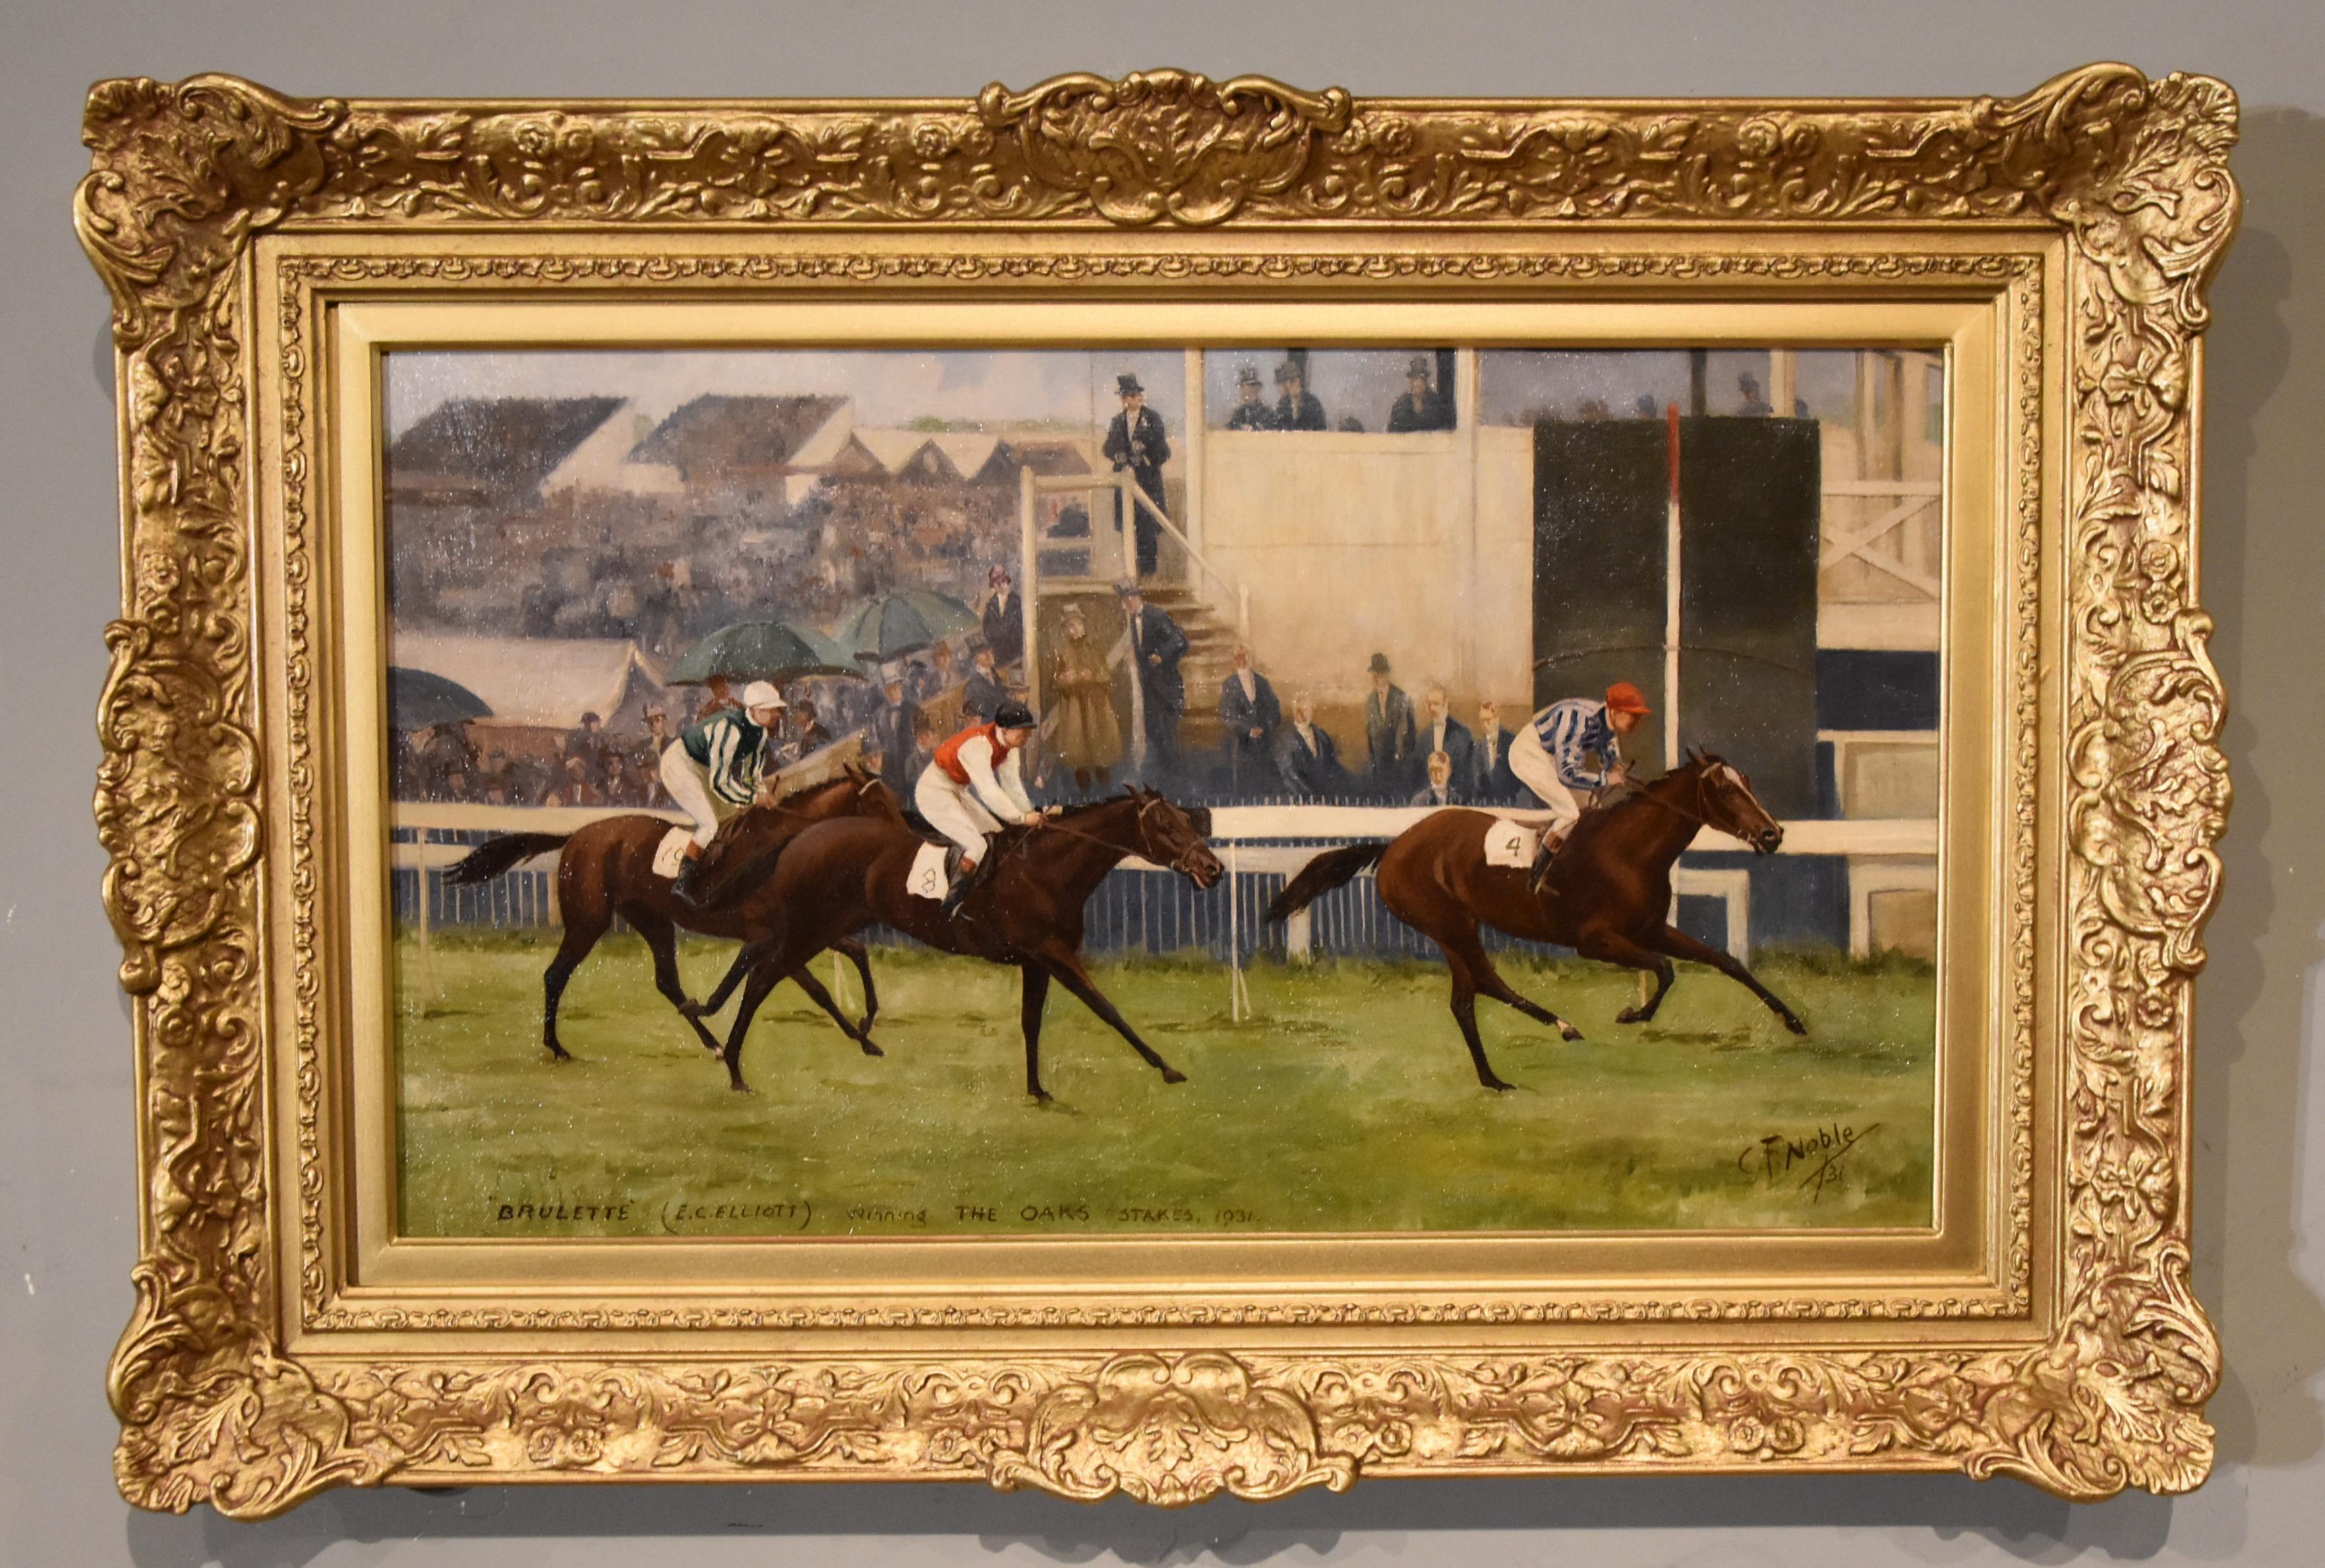 Peinture à l'huile de Charles Frederick Noble  "Brulette (E.C.Elliot) remportant les Oak Stakes en 1931"" 1920 - 1931 Peintre de Hampstead, au nord de Londres, auteur de scènes dramatiques de courses et de chasses, ainsi que de foires aux chevaux.